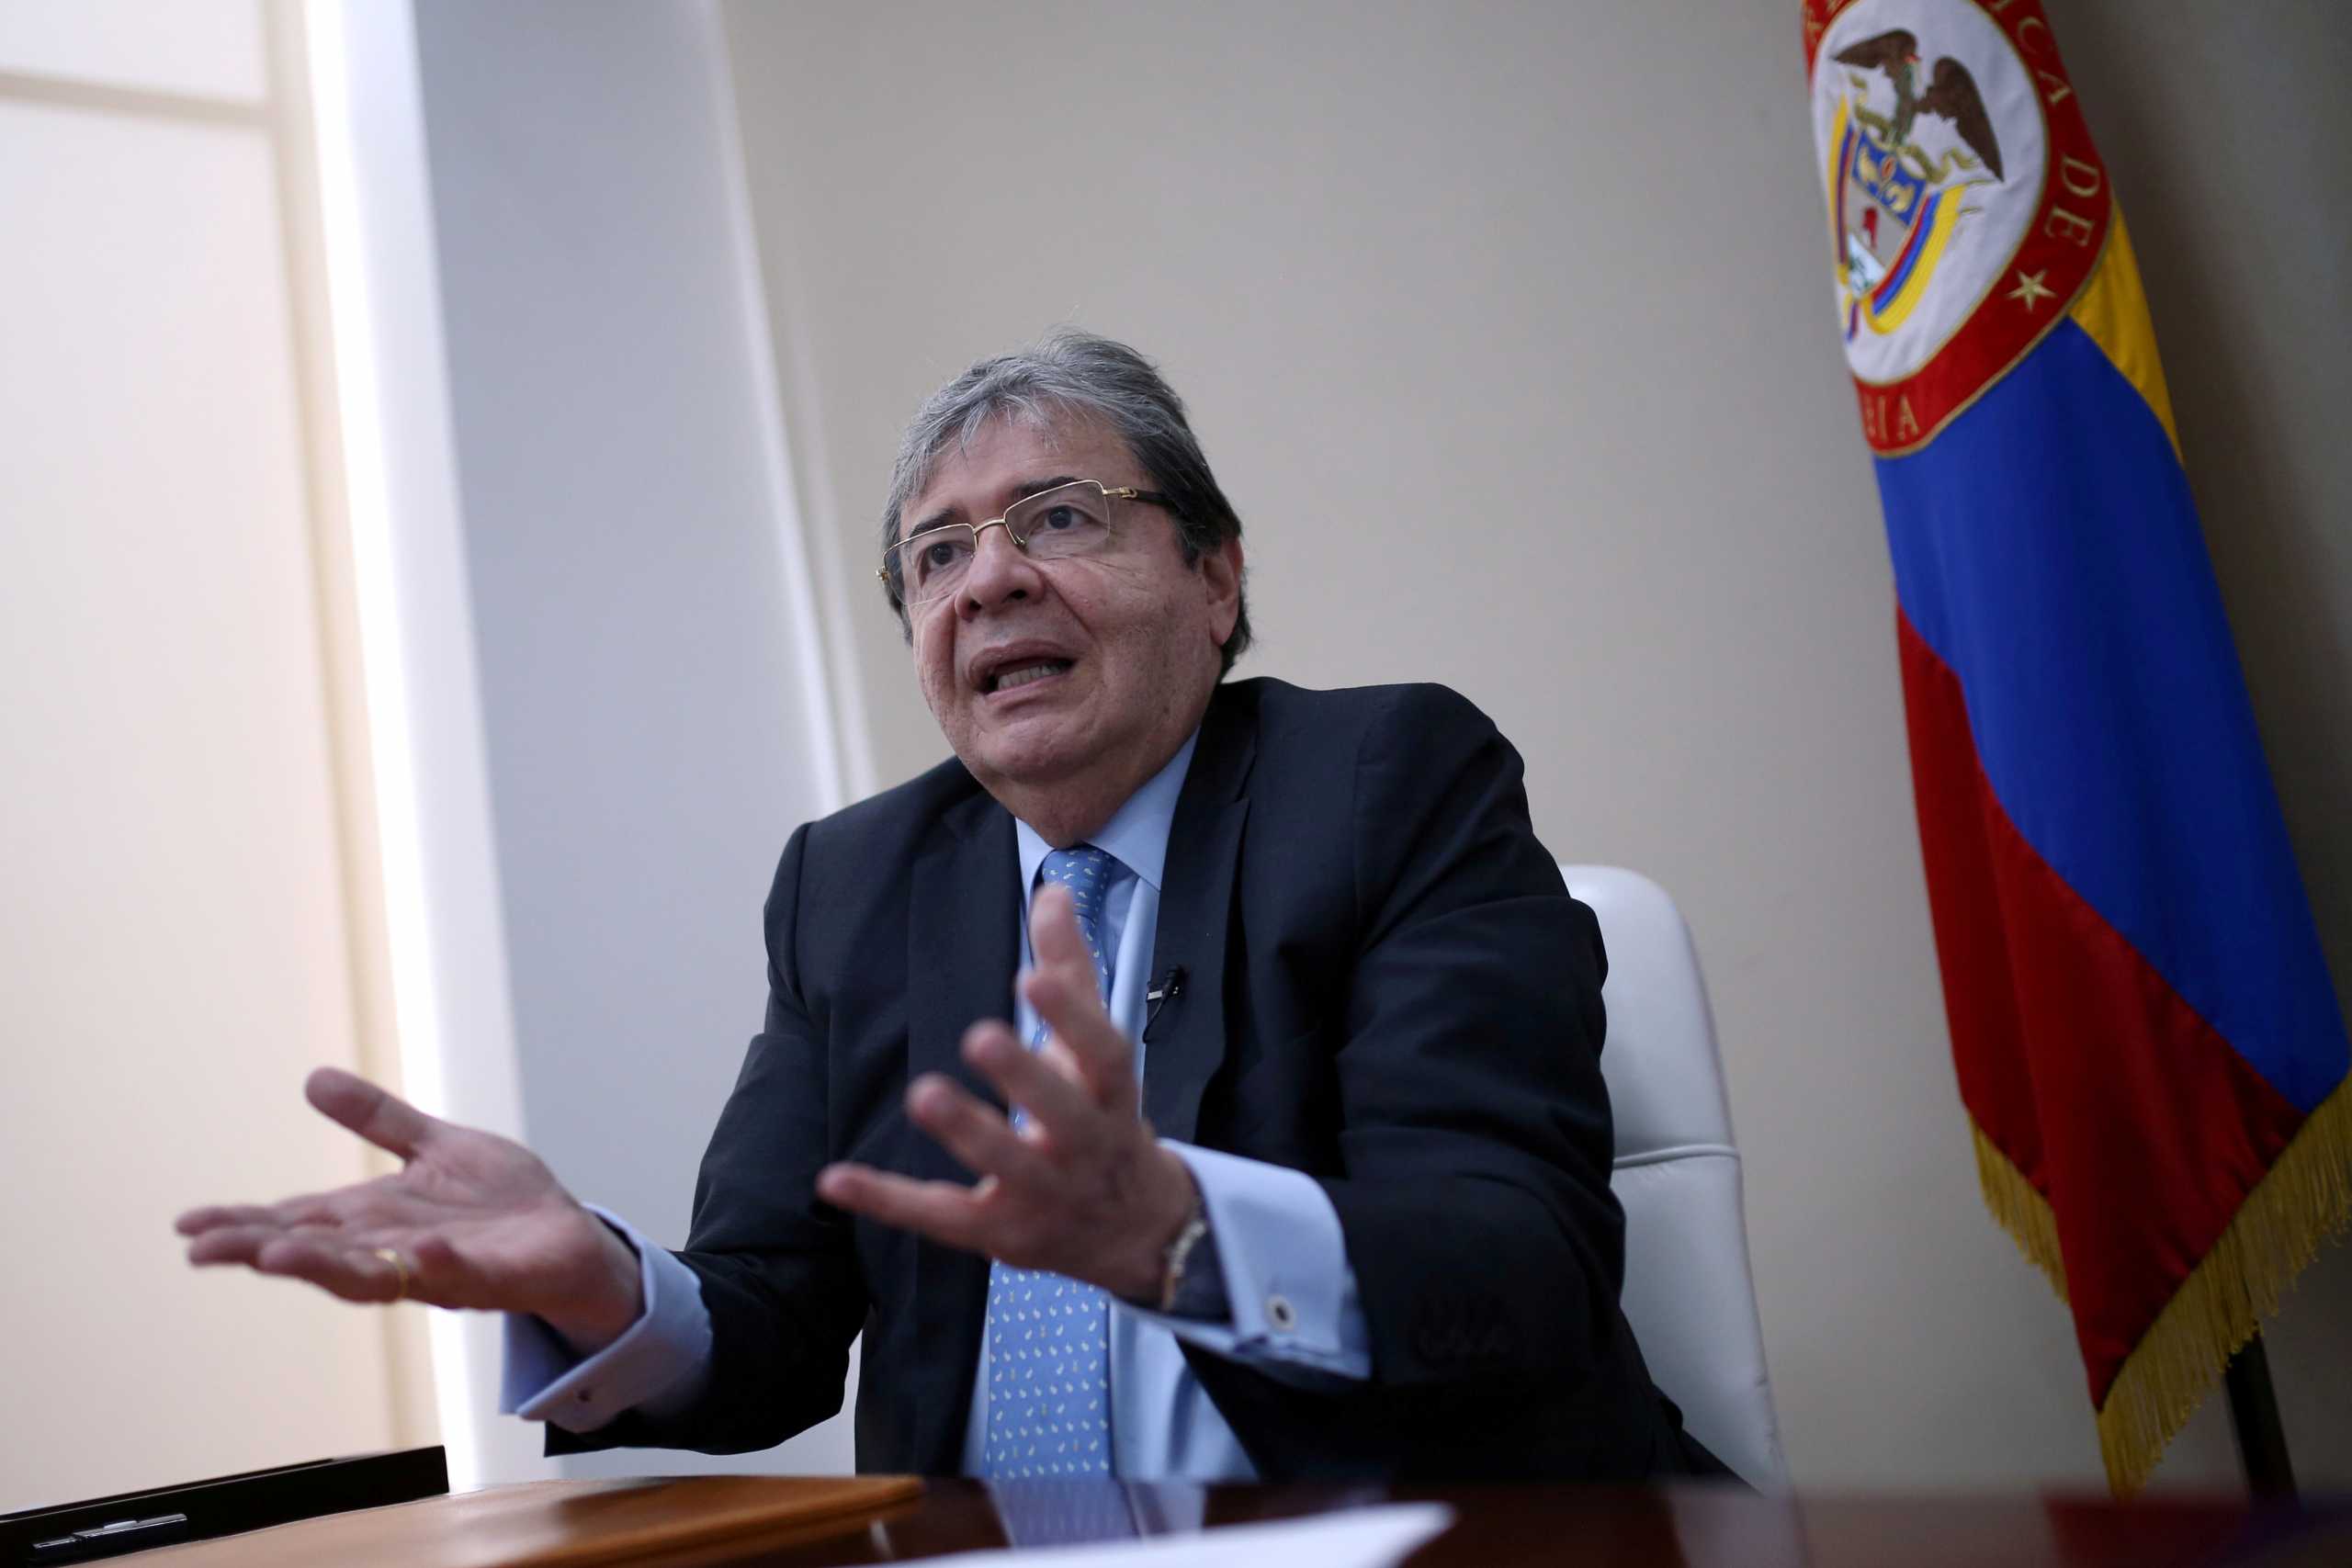 Κολομβία: Στην εντατική με κορονοϊό ο υπουργός Άμυνας – Απαγόρευση νυχτερινής κυκλοφορίας στην Μπογκοτά